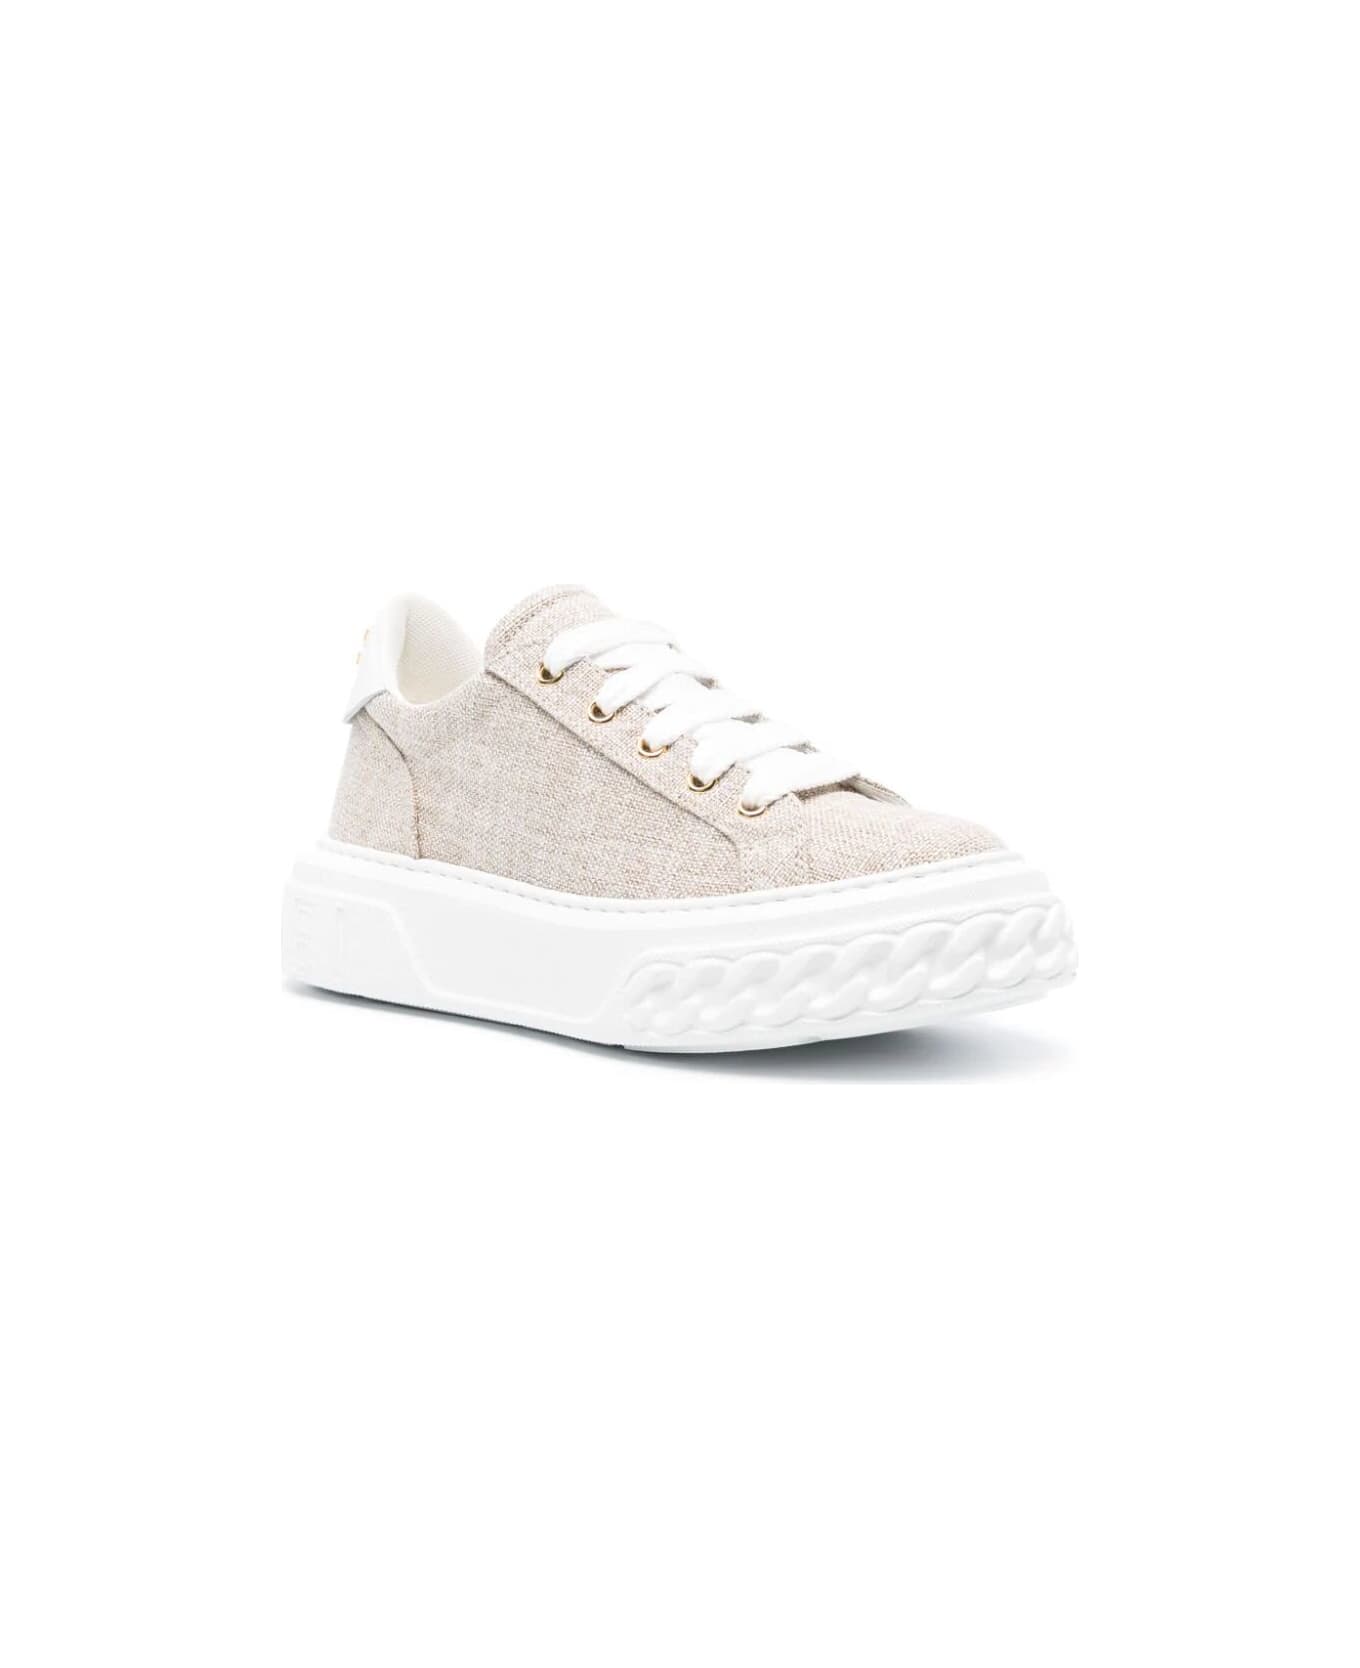 Casadei Lurex Sneaker - Gold White